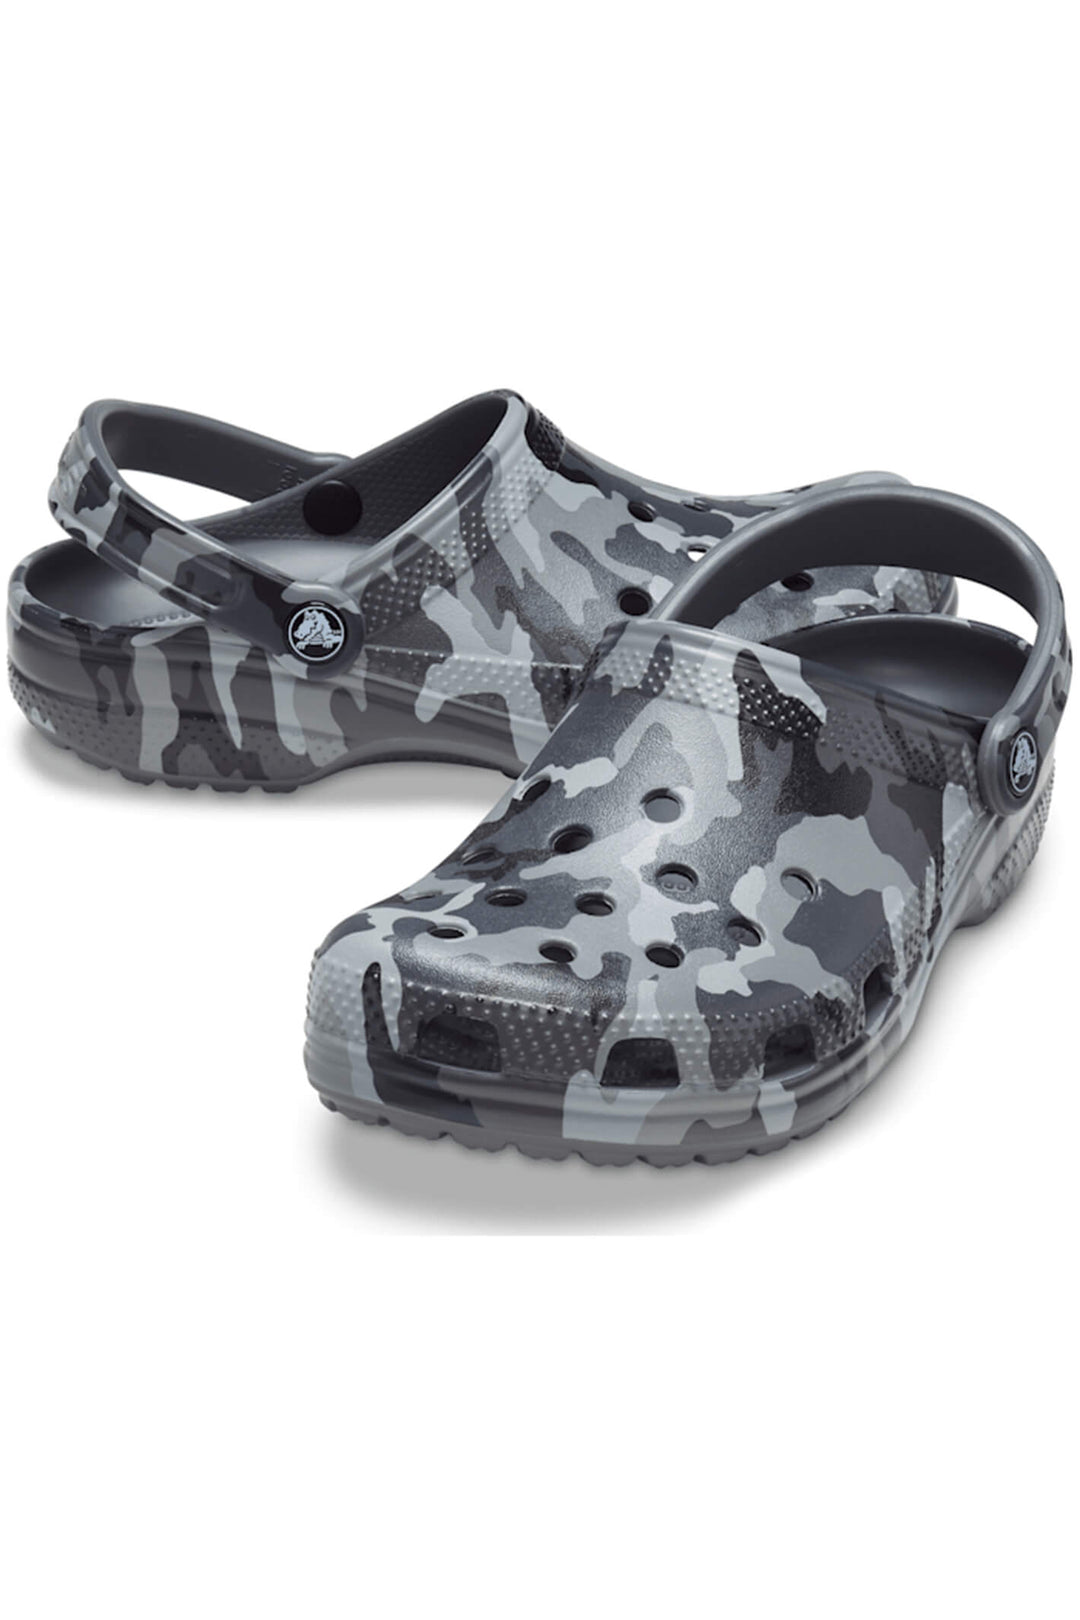 Crocs Classic 206454 OIE Camo Grey Multi Clog - Shirley Allum Boutique